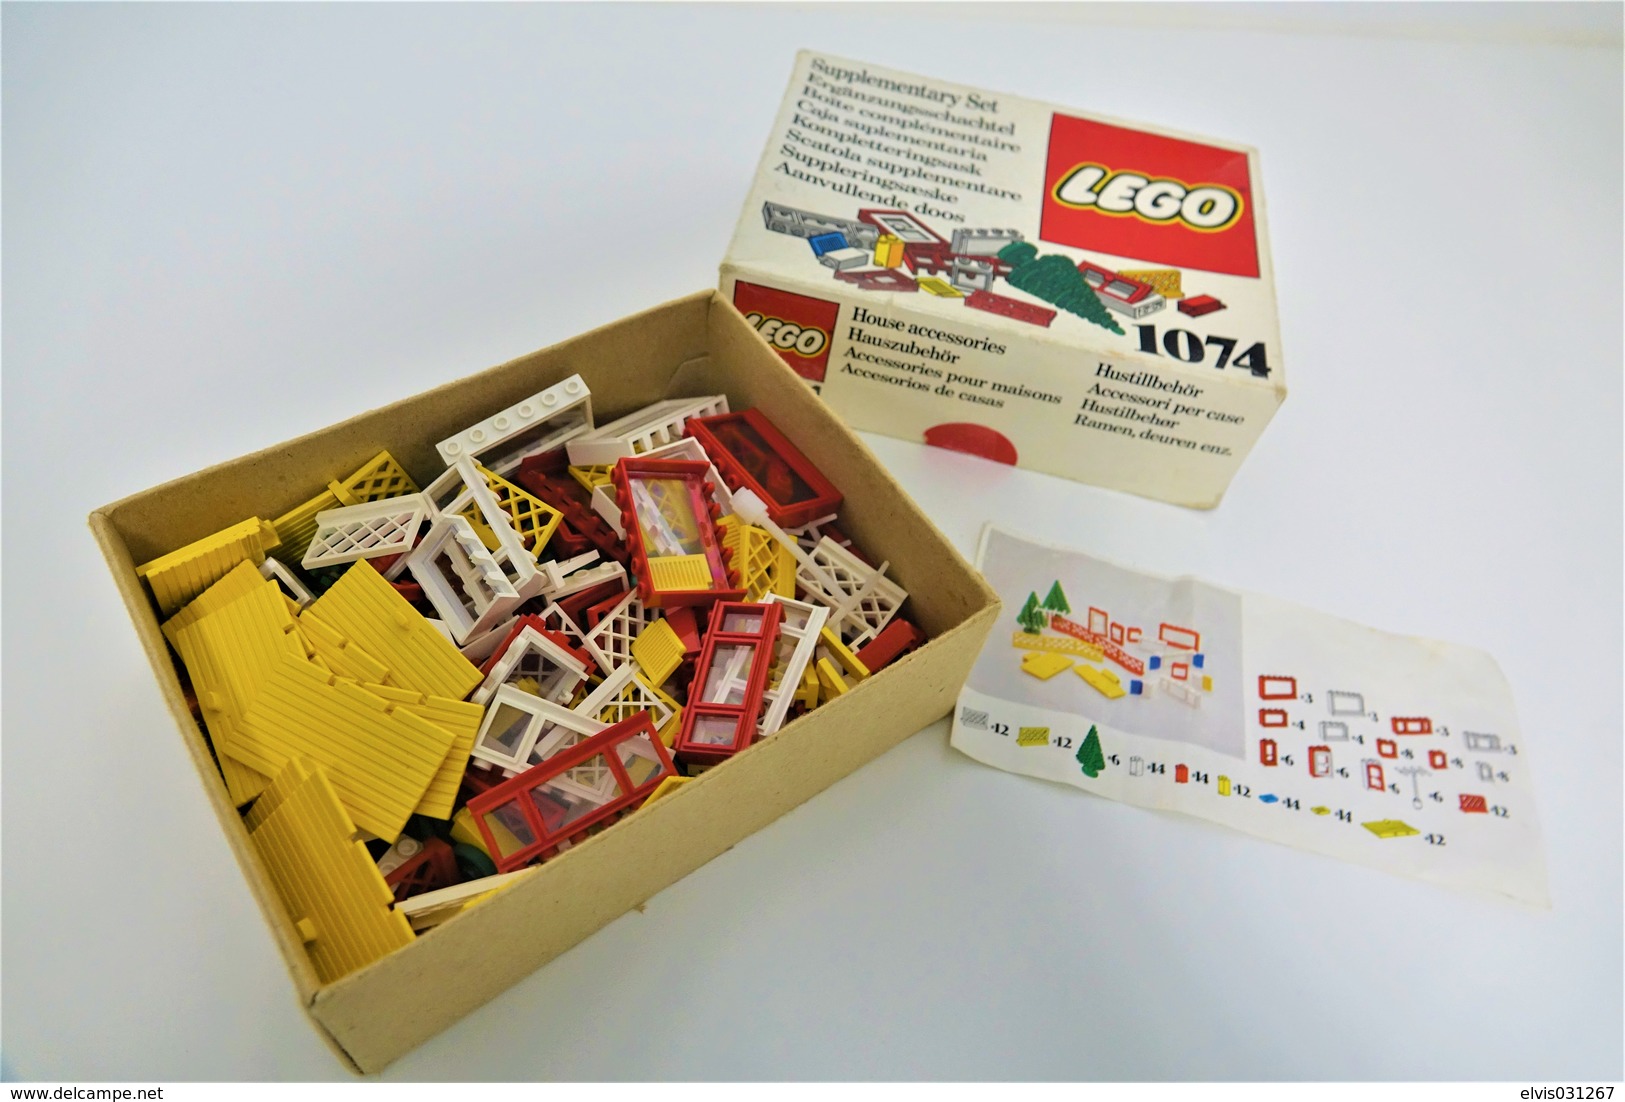 LEGO - 1074 Supplementary Box -very Rare - Original Box - Original Lego 1976 - Vintage - Catalogi